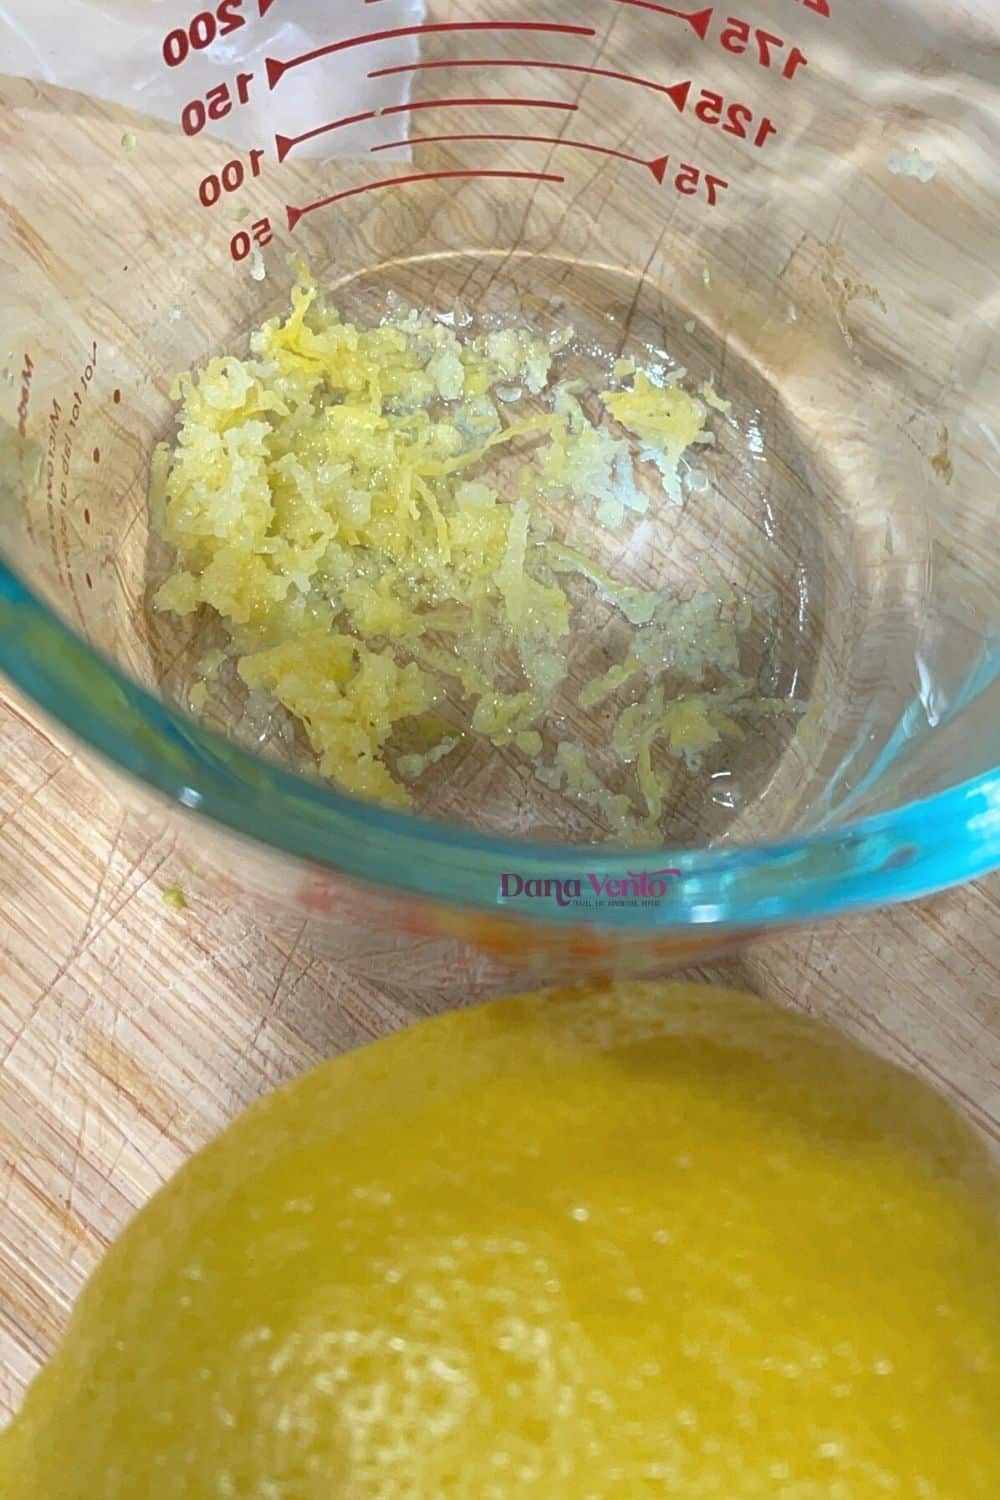 lemon zest just prepared for my asparagus Parmesan soup recipe